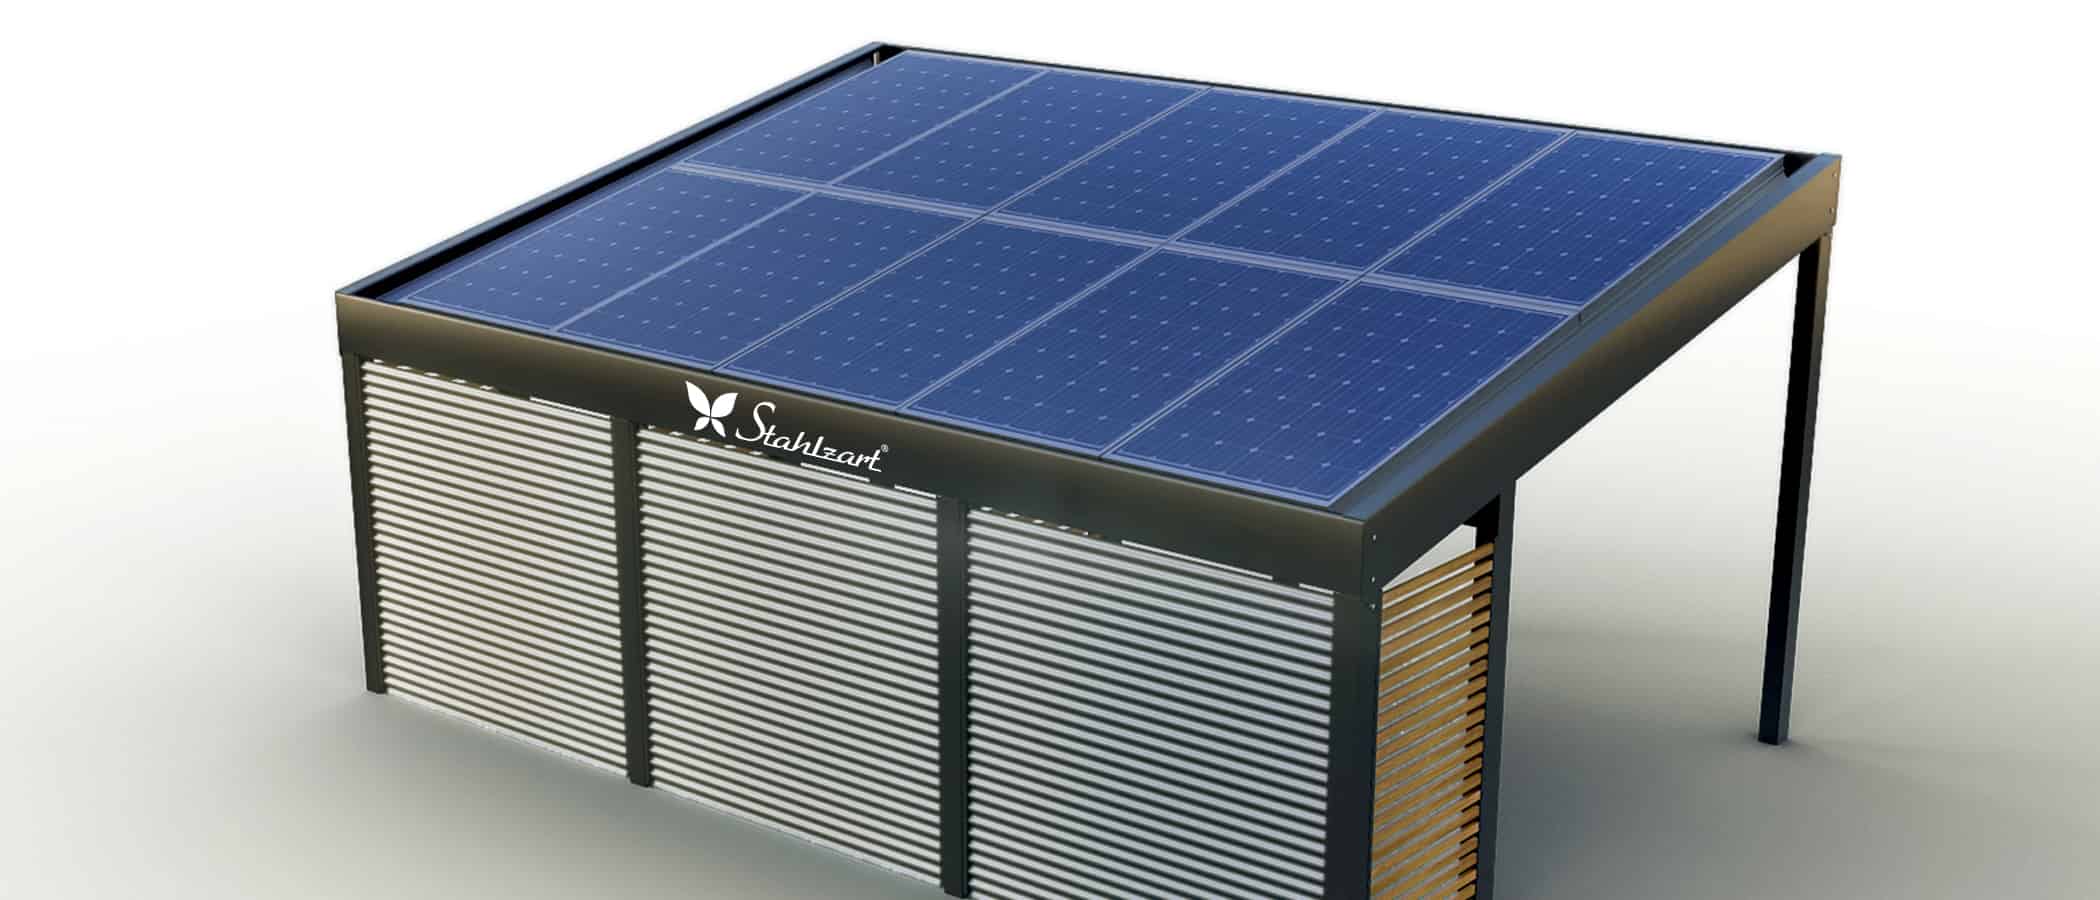 stahlzart-solar-carport-carports-e-fahrzeuge-solaranlage-strom-solarcarport-e-auto-kosten-30-jahre-carportdach-photovoltaik-module-schraegdach-stahlblech-seitenwand-vorteile-fragen-holz-metall-stahl